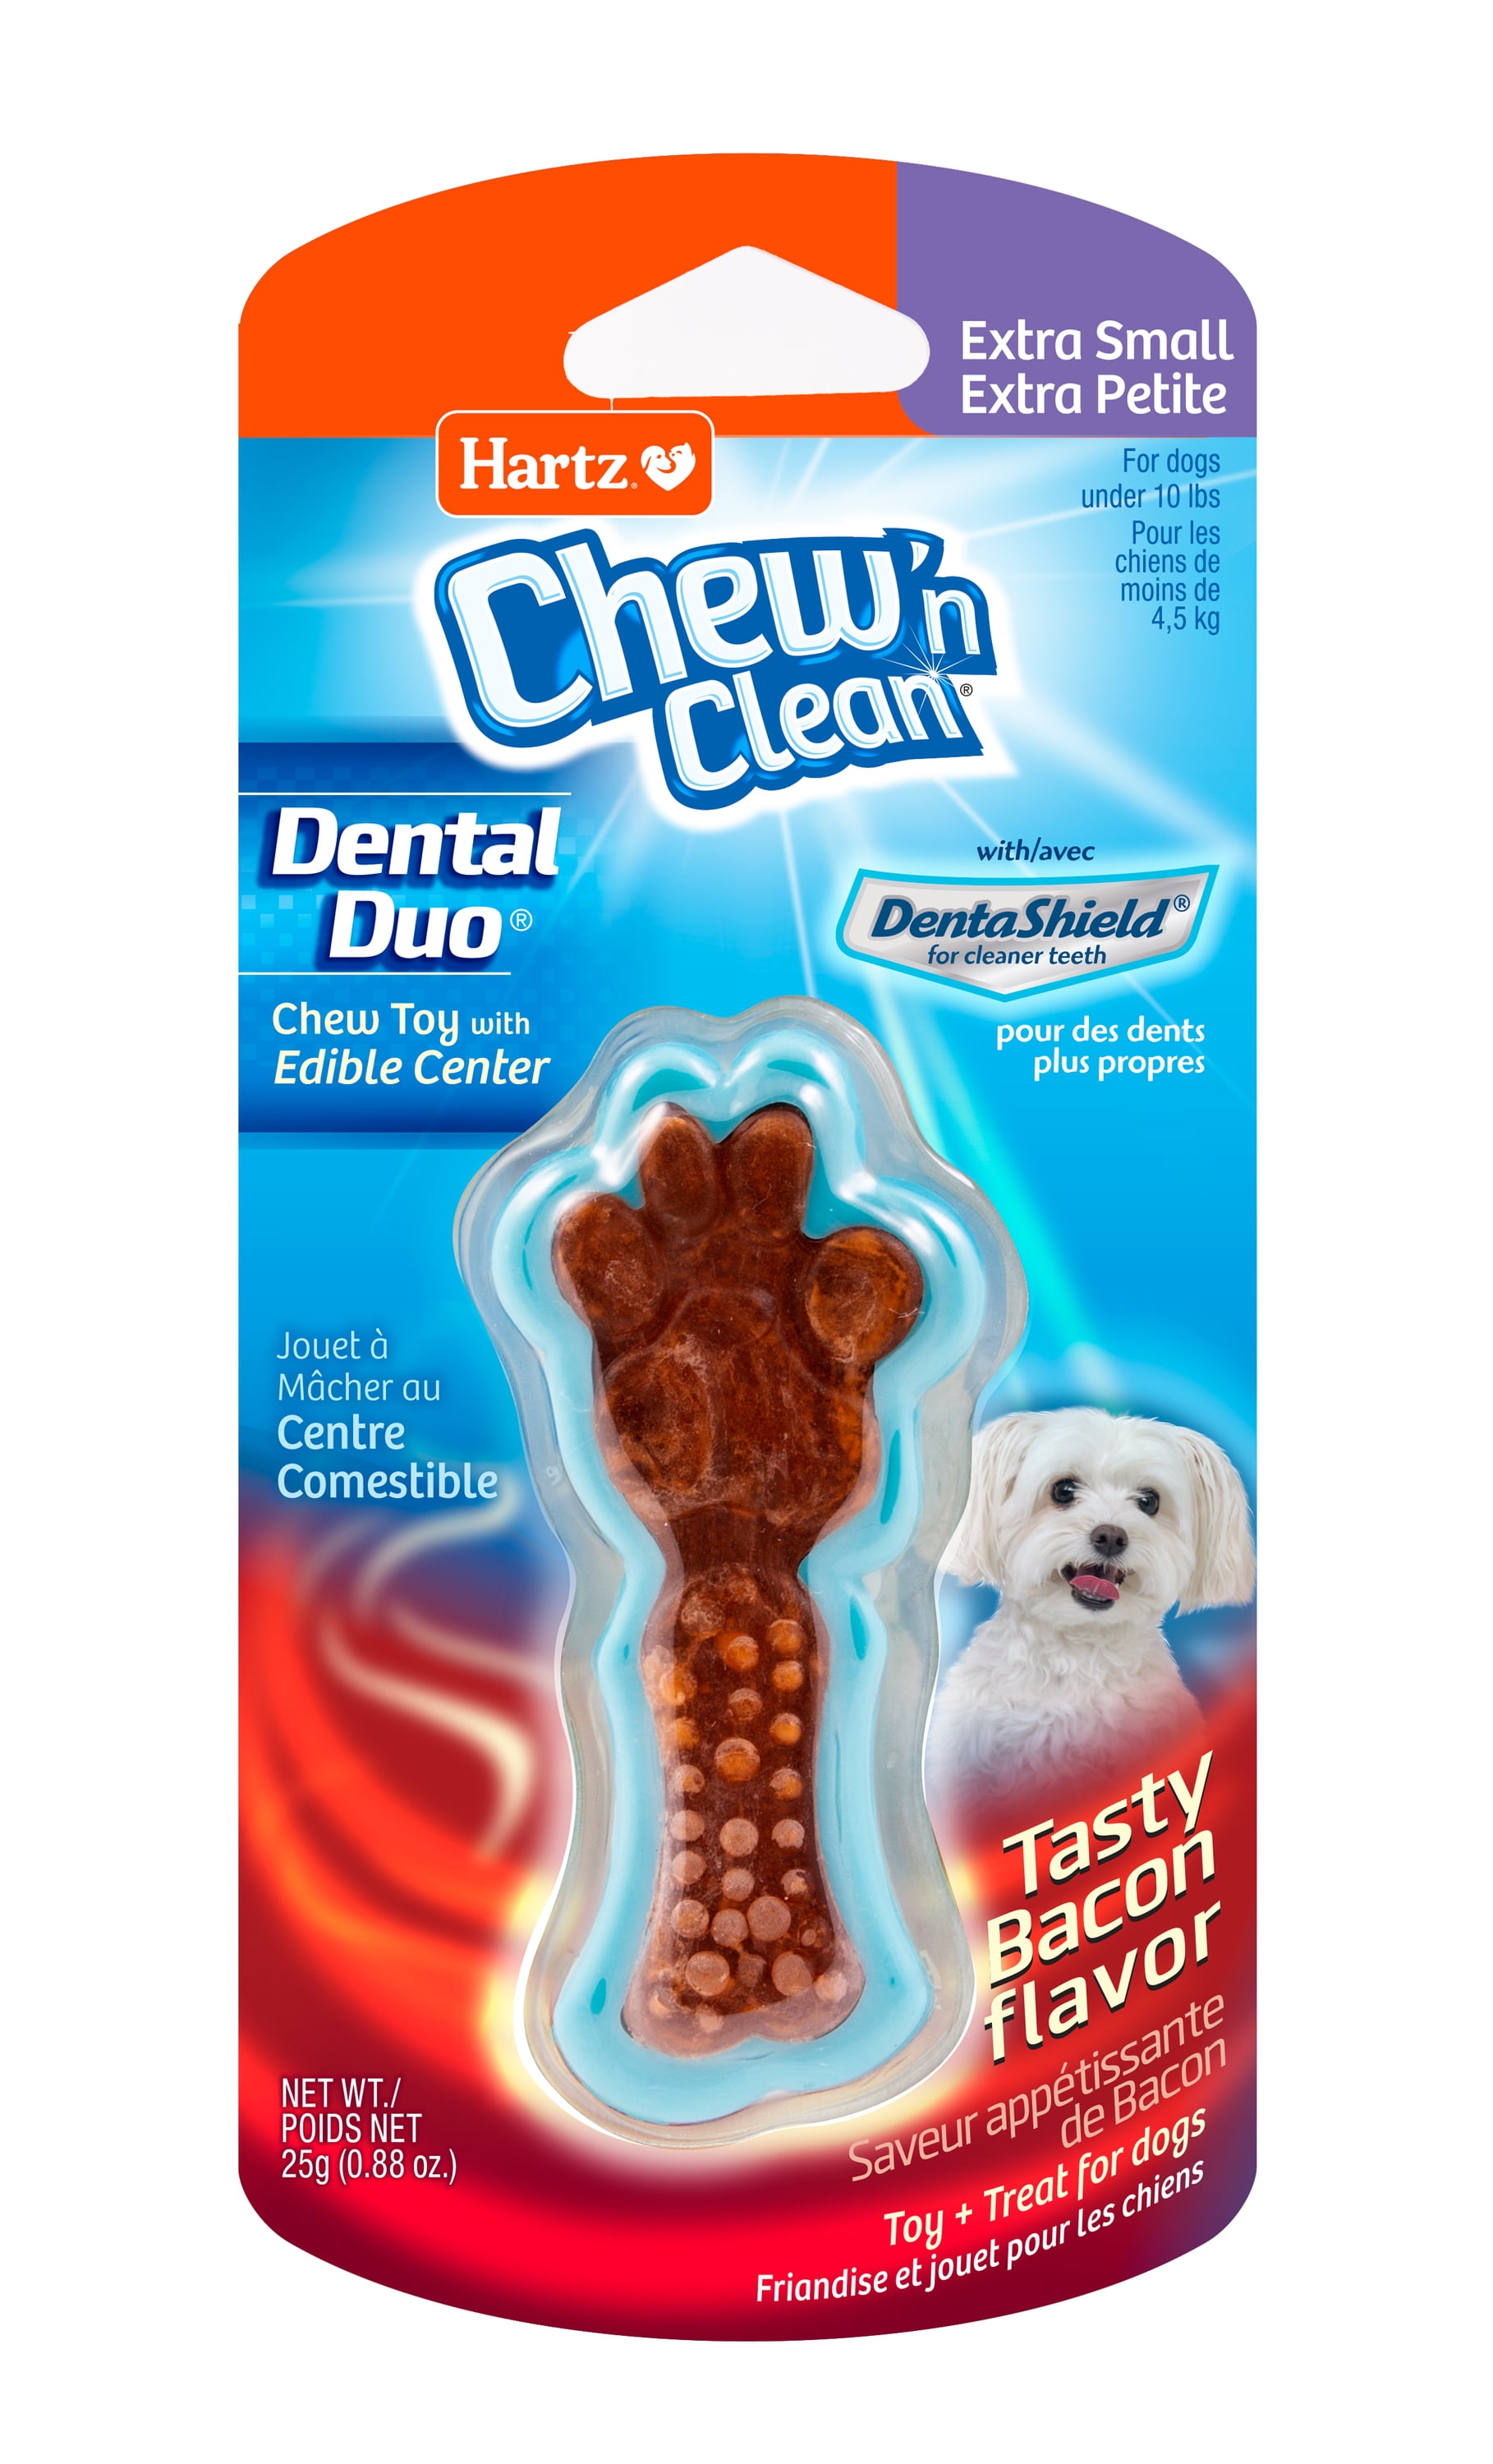 Hartz® Chew 'n Clean® Twisty Bone™ Small / Medium